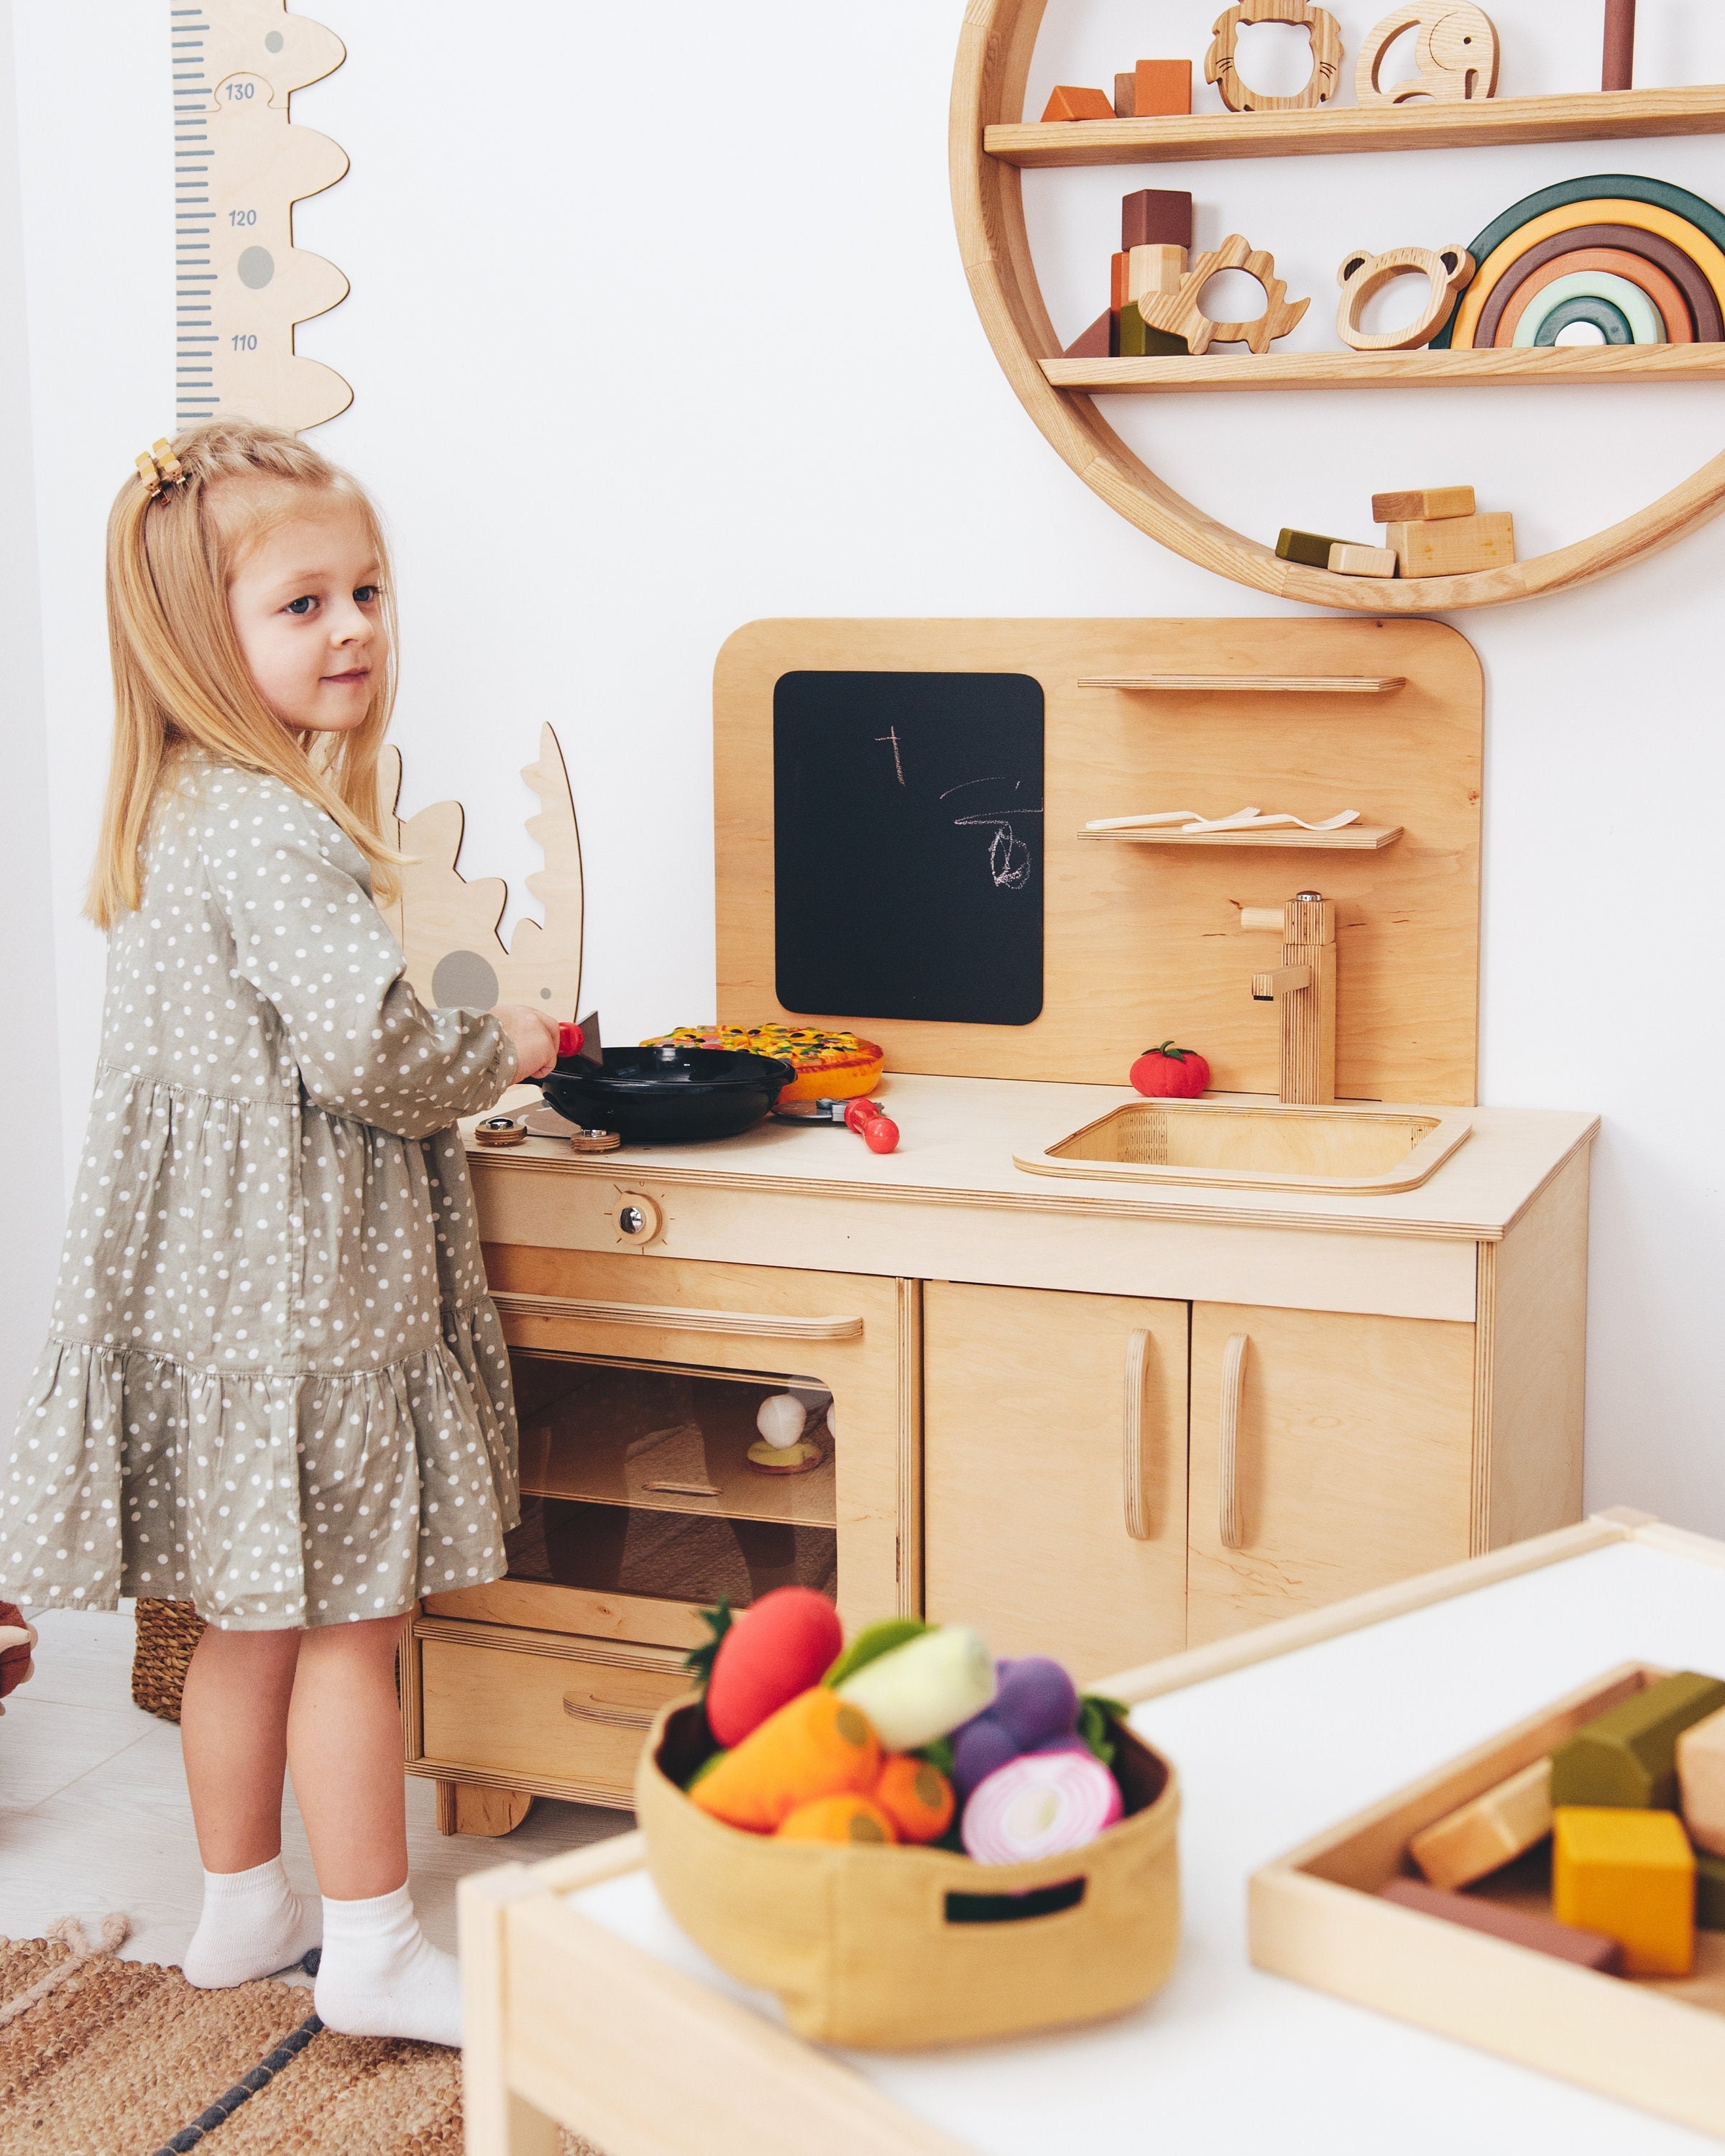 WoodenEdu Premium Toddler Play Kitchen Toys, Wooden Kitchen Utensils,  Accessories for Pretend Play Kitchen Set, Montessori Learning Toy, Pretend